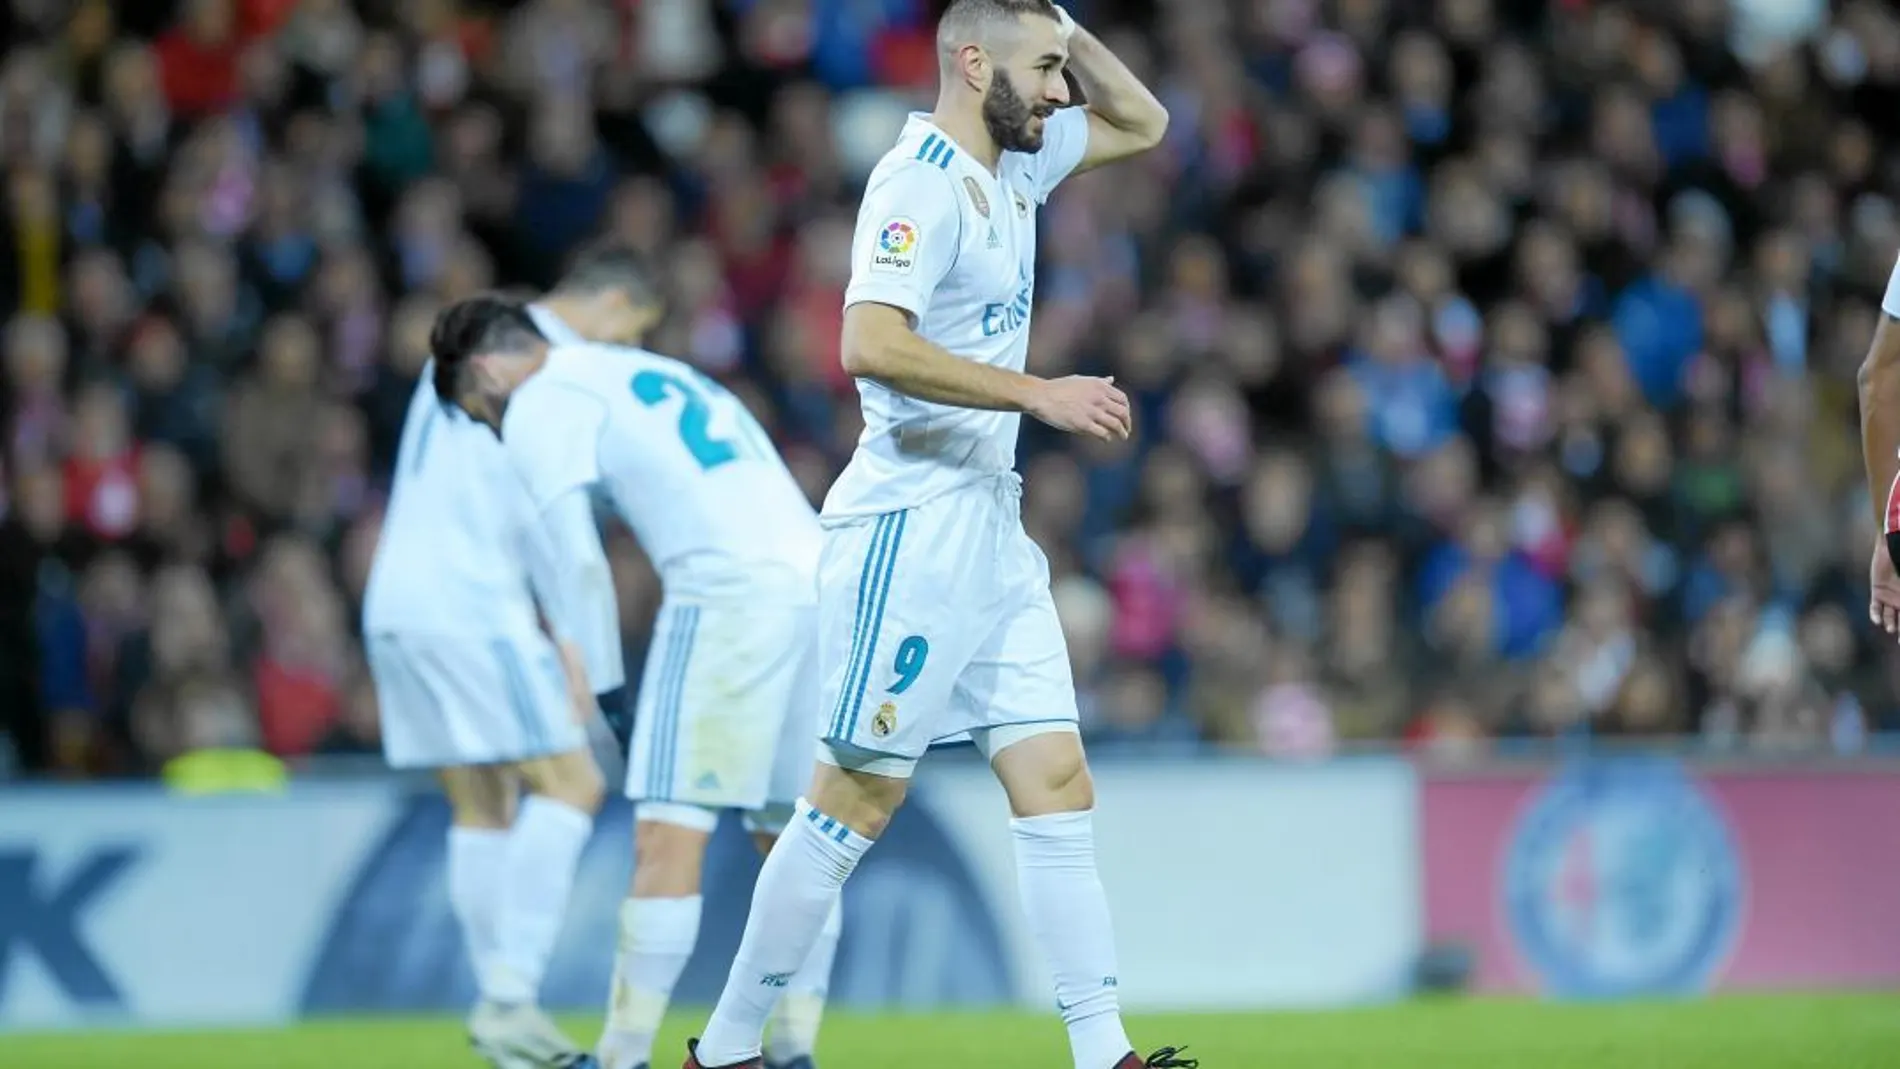 El Real Madrid tenía que ganar en Bilbao, pero no fue capaz de hacer gol y sufrió otra decepción